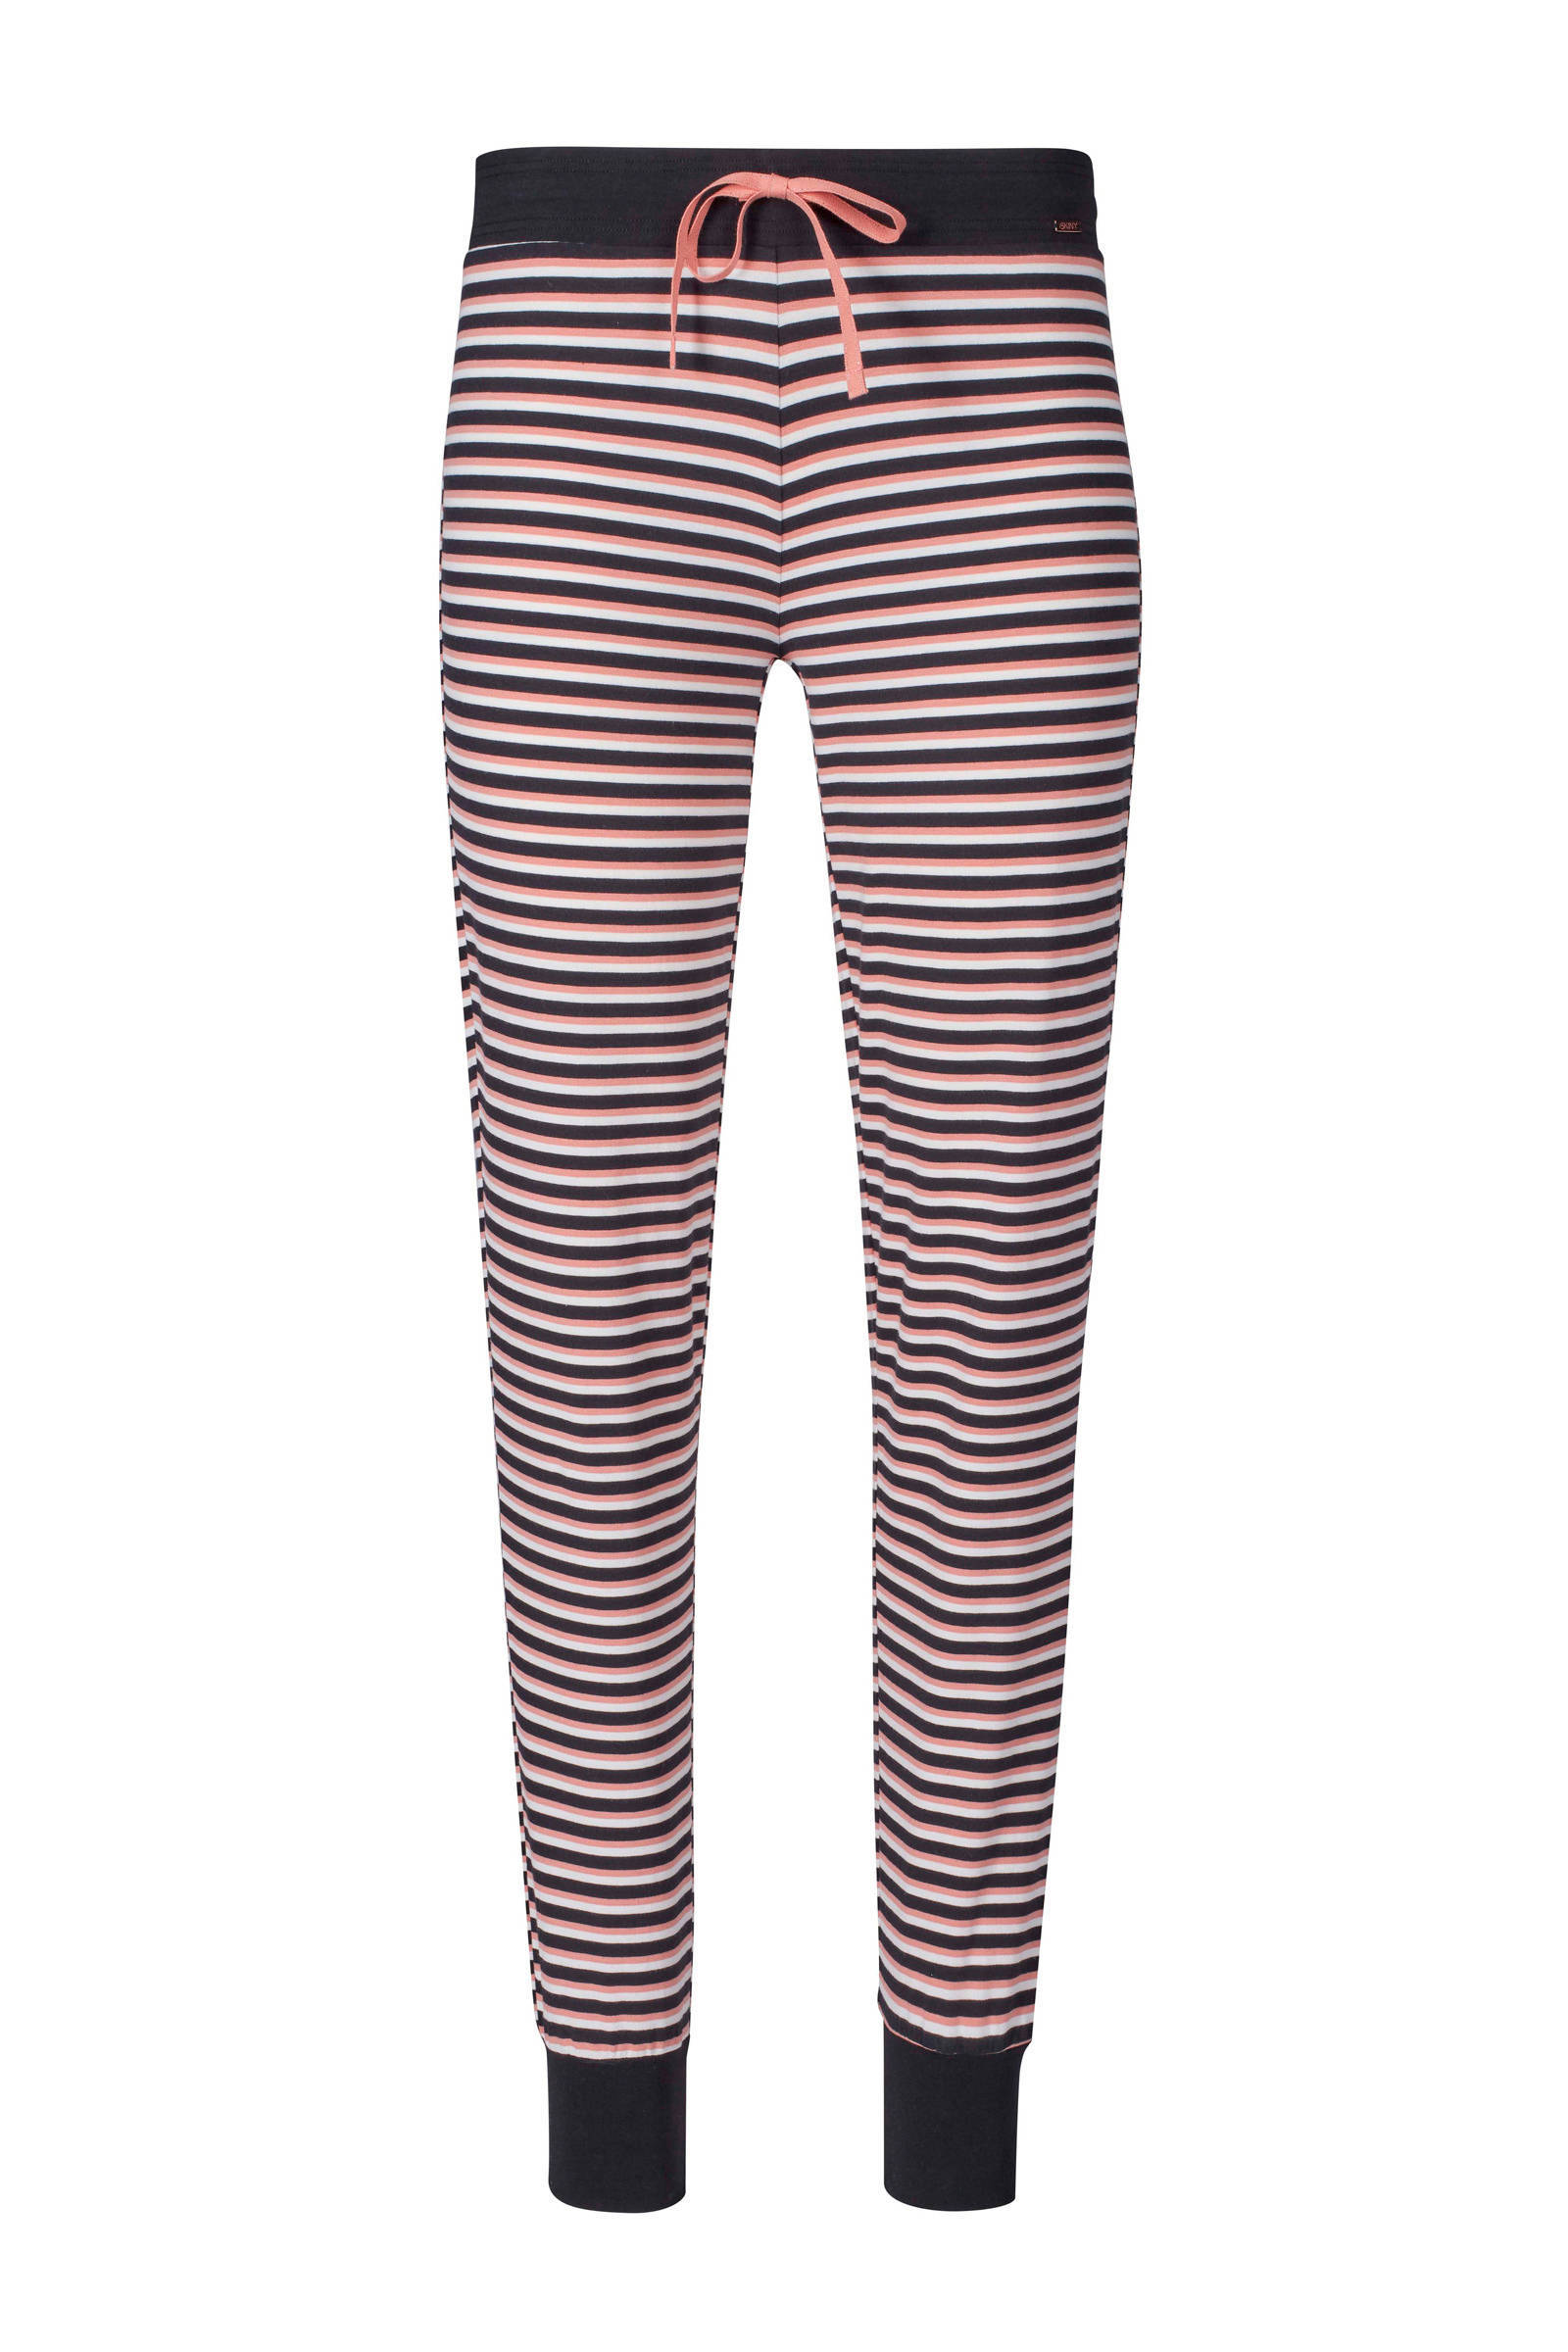 SKINY Slaap broek lang rose black stripe | sleep & dream online kopen